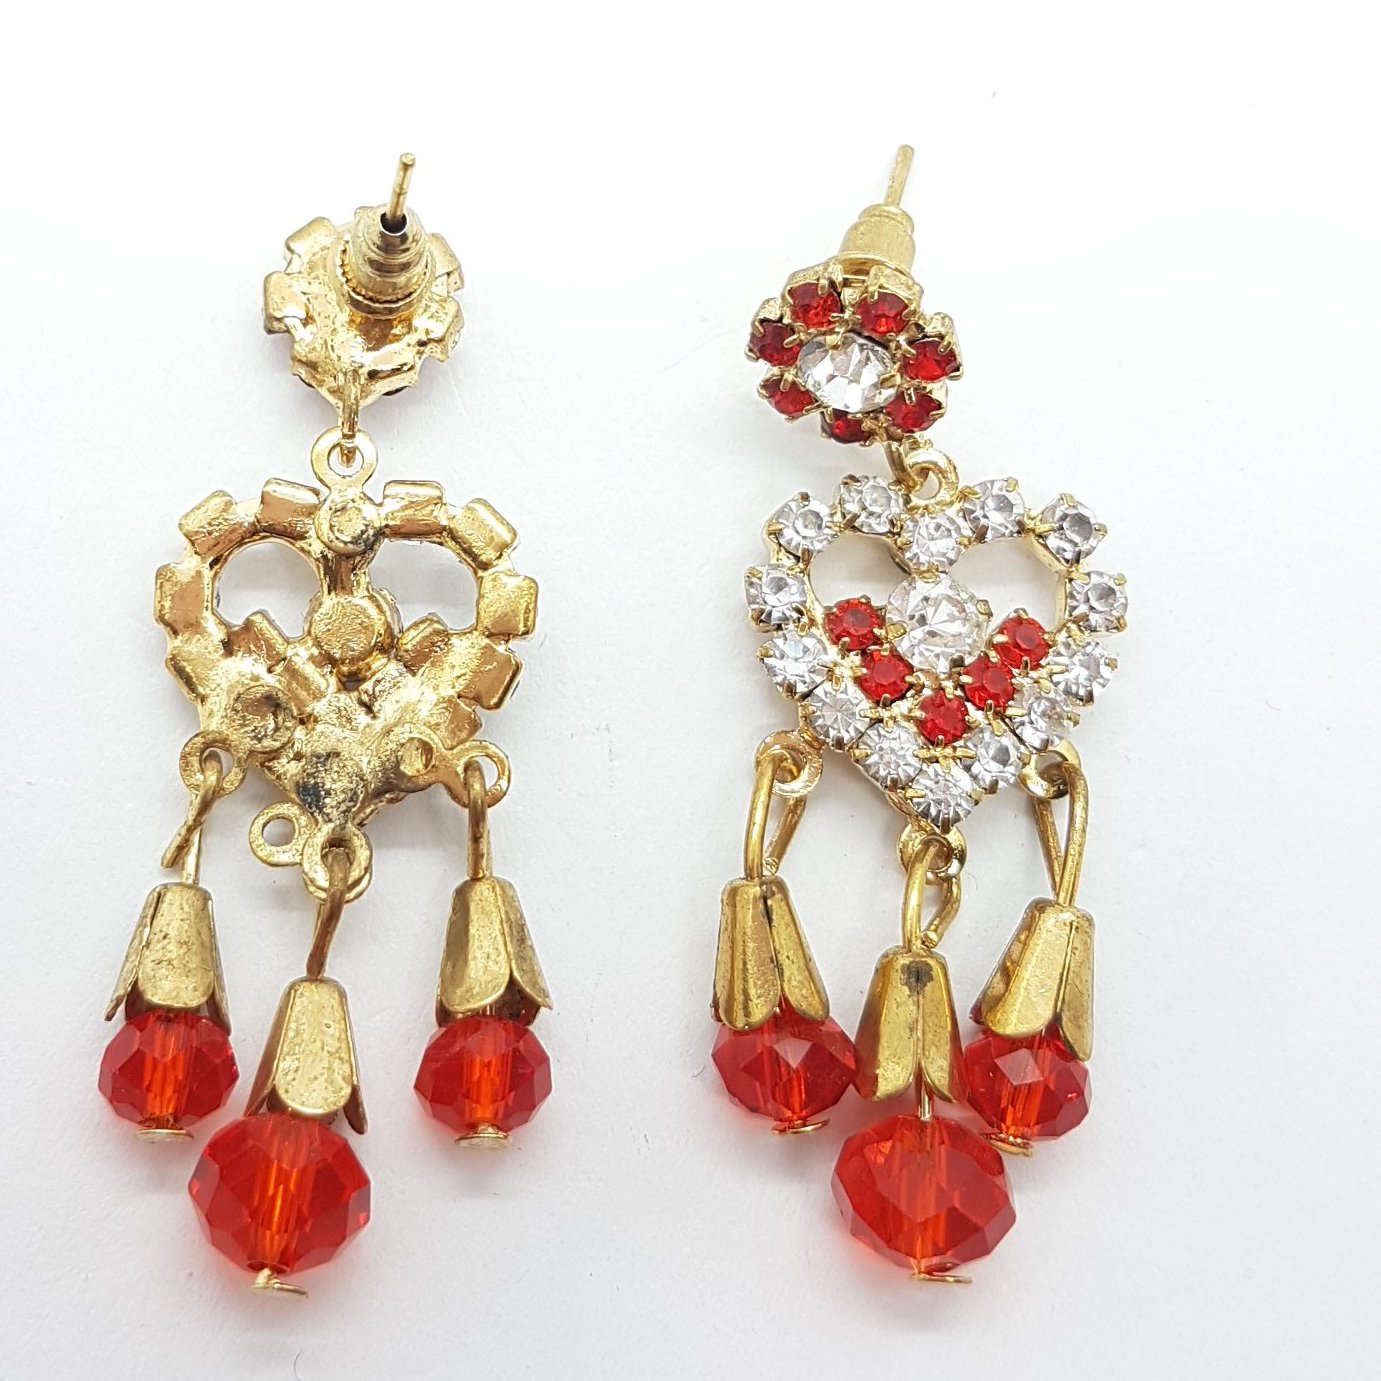 Red Rhinestone Heart Earrings